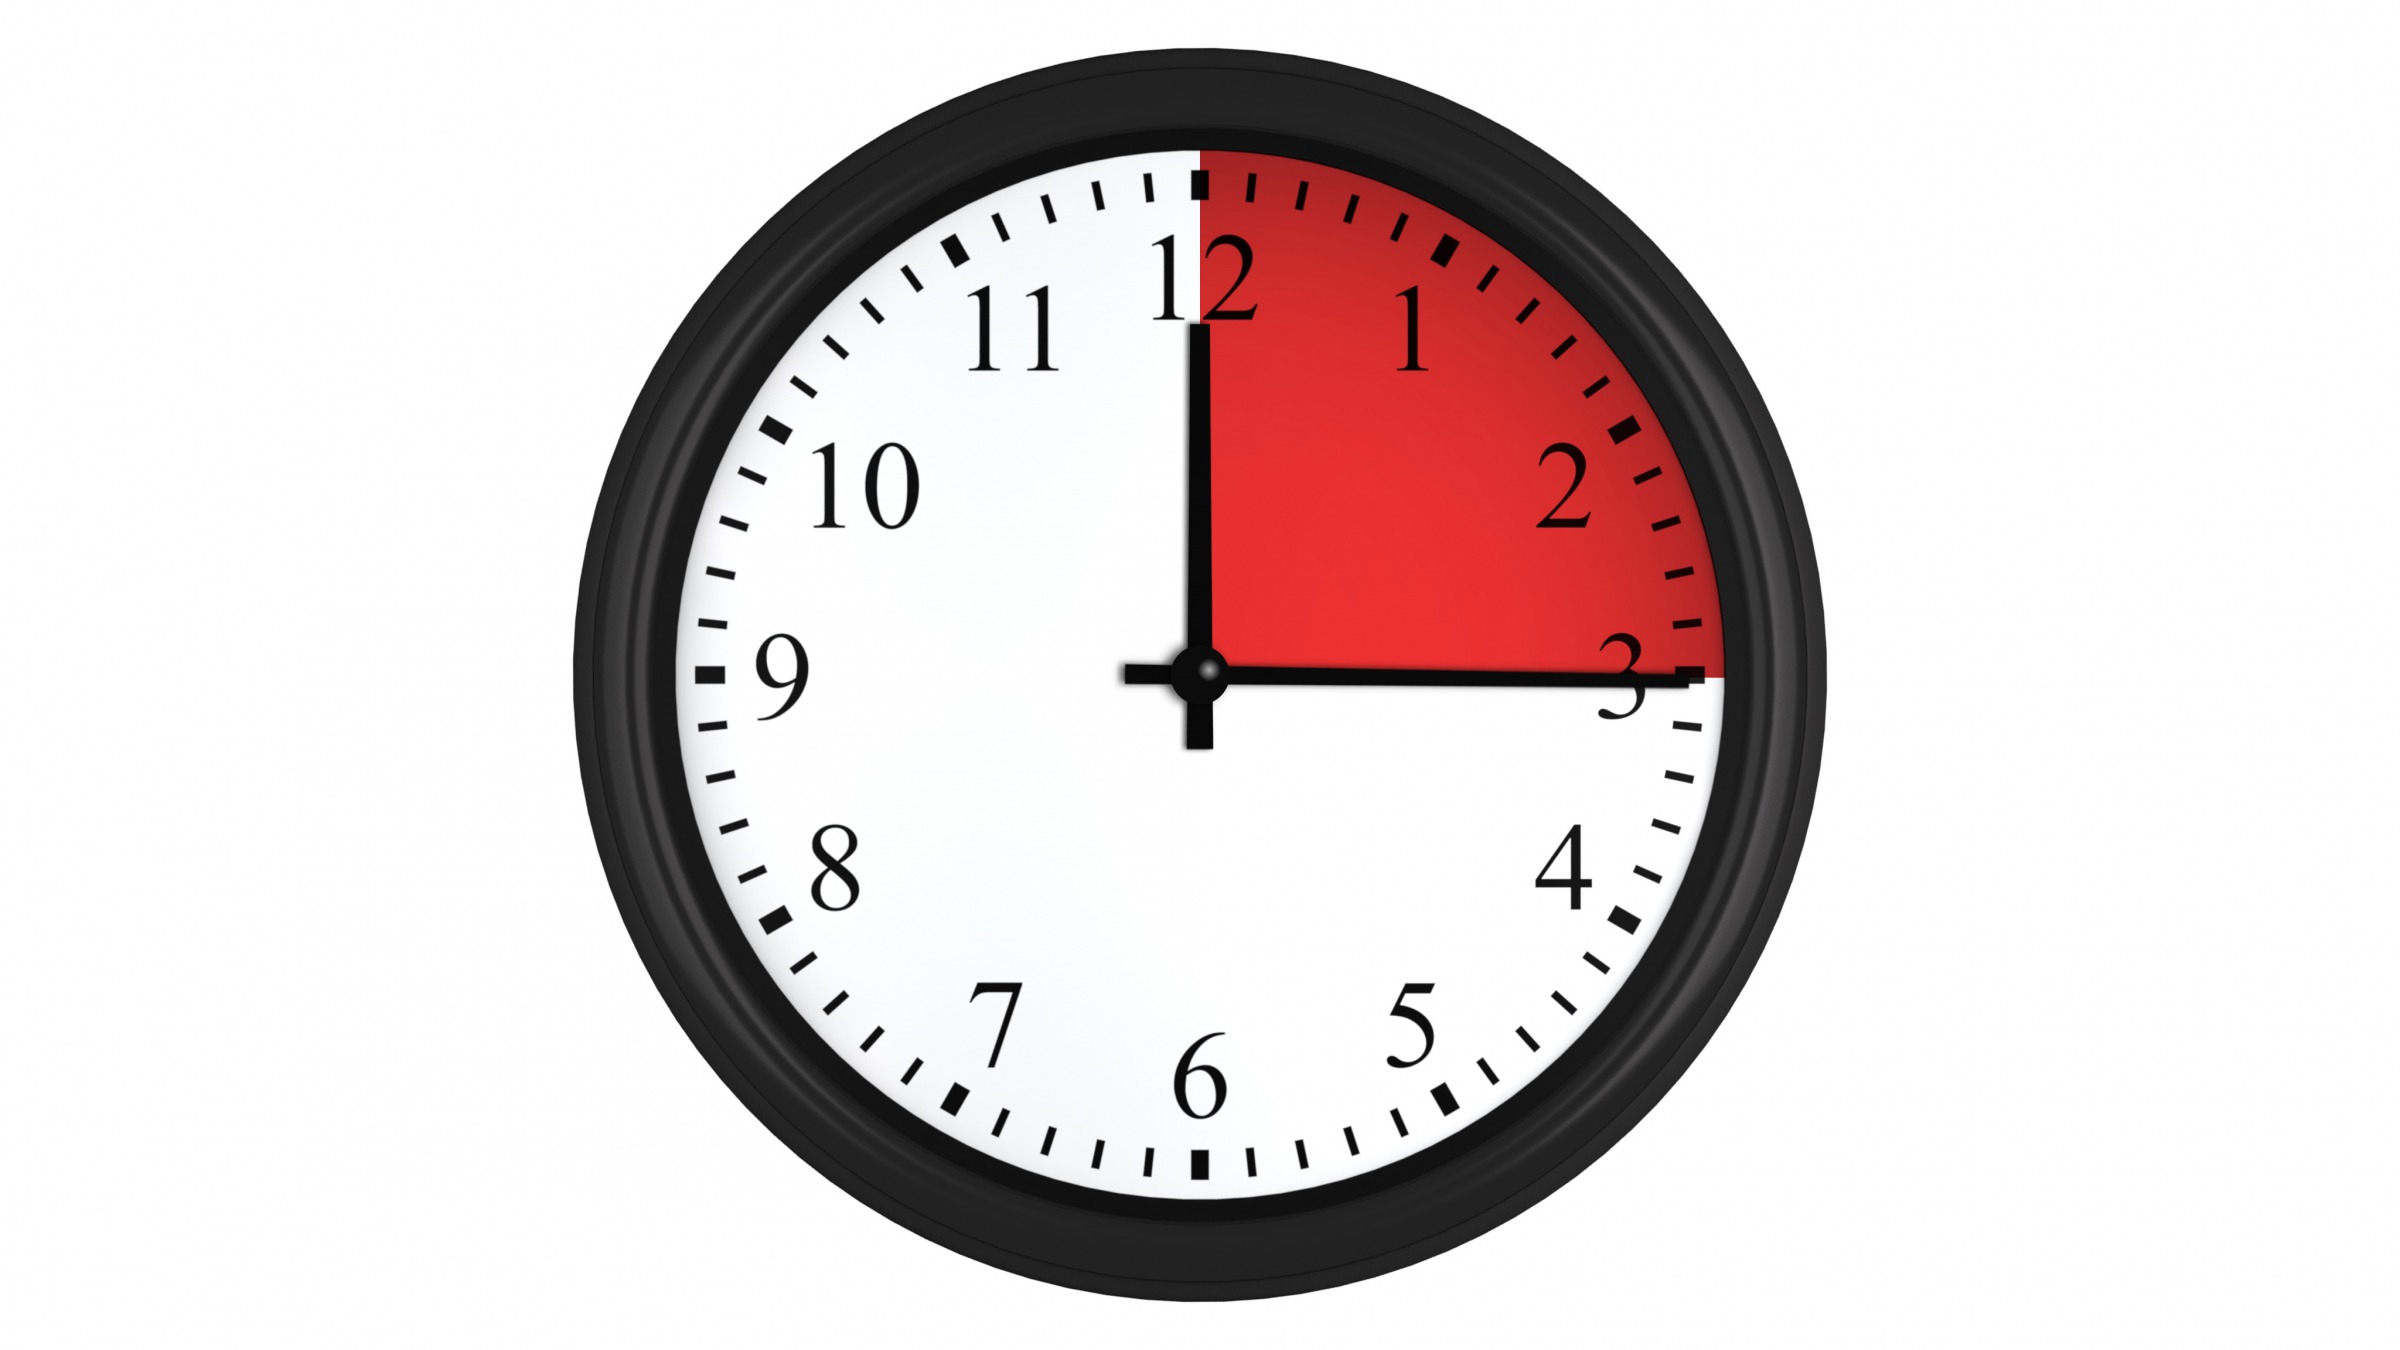 13 20 4 часа. 15 Минут на часах. Часы 15 часов. Часы циферблат 15 минут. Часы циферблат 3 часа.